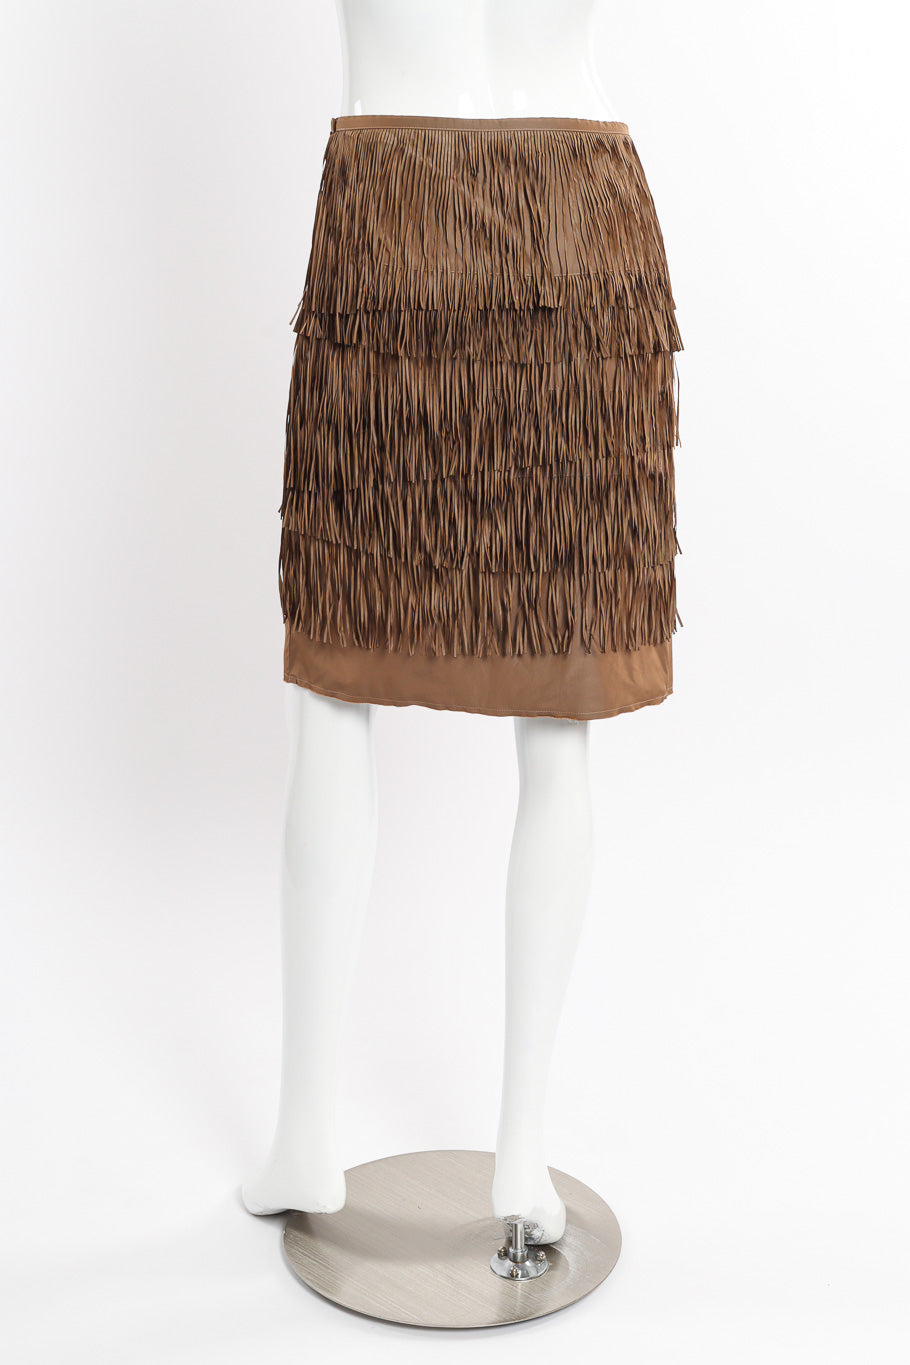 Vintage Lanvin Tiered Fringe Skirt back view on mannequin @recessla